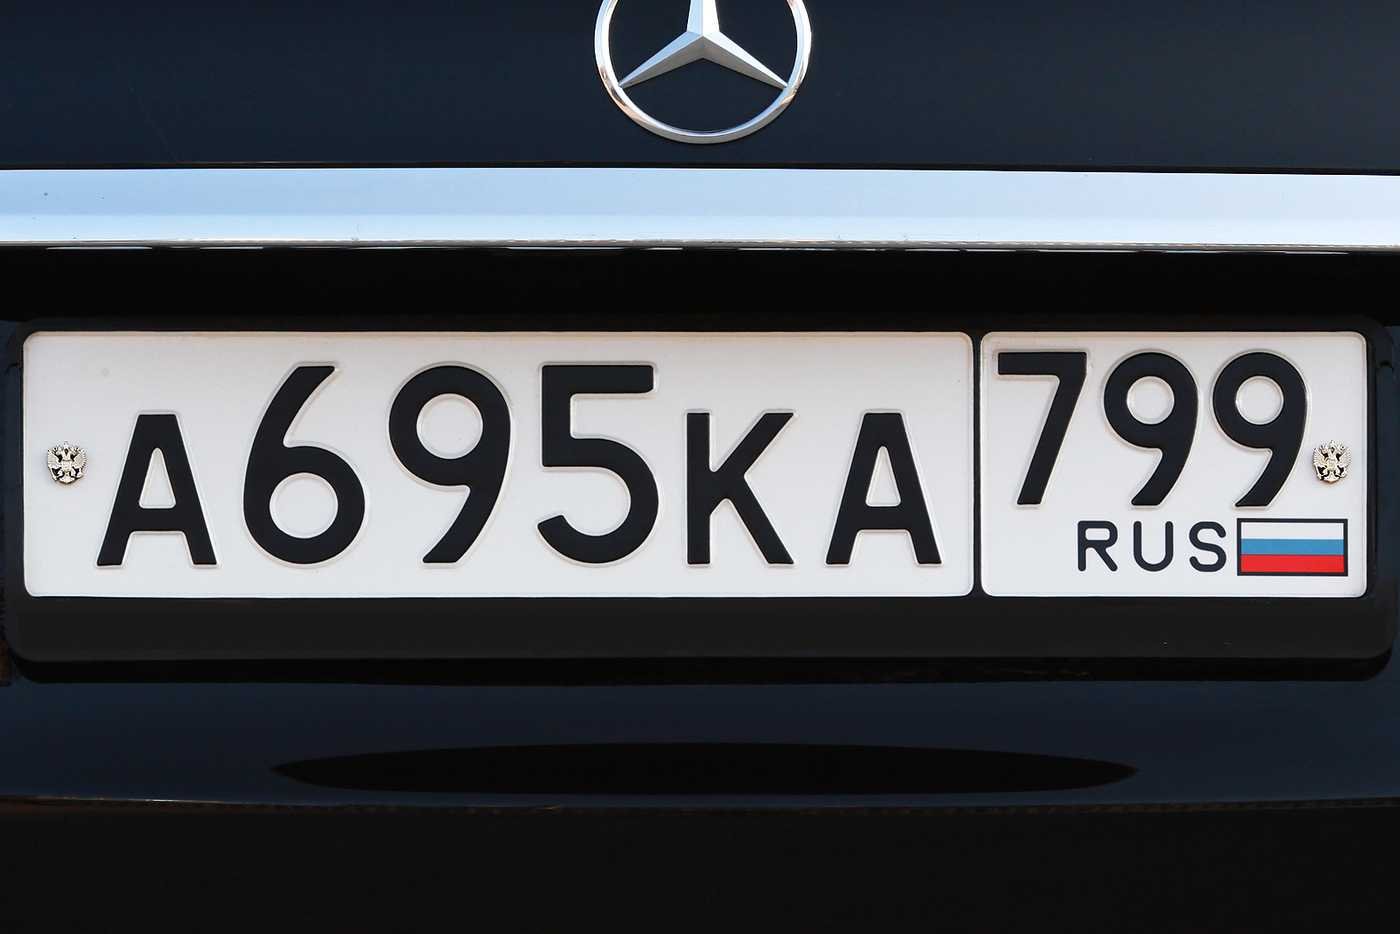 Надписи на номерах машин. Автомобильные номера. Номерной знак. Гос номер автомобиля. Гос номерной знак автомобиля.